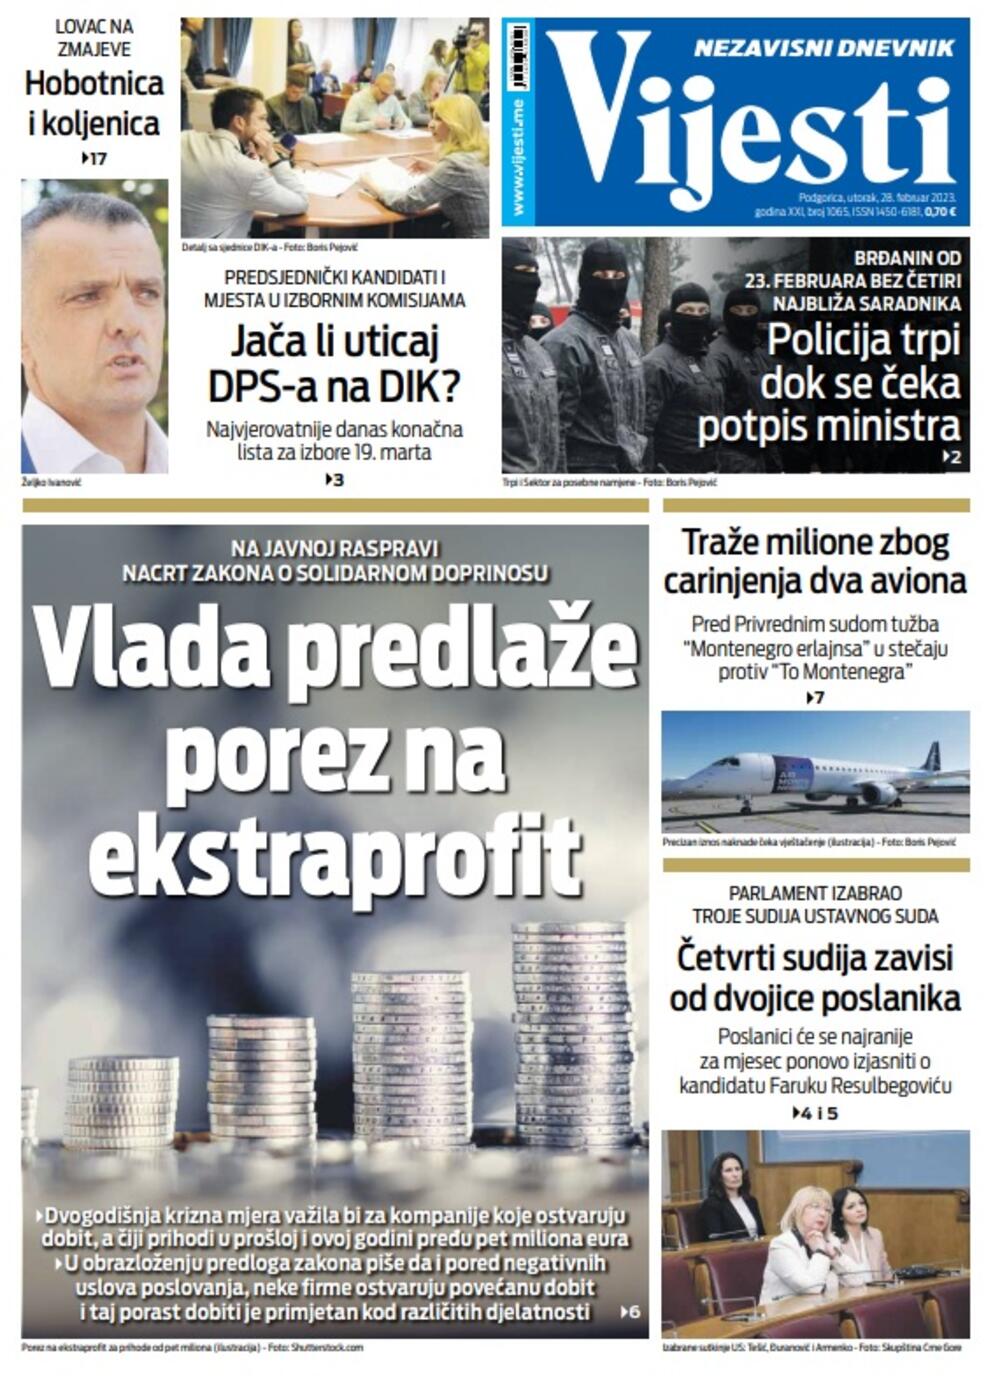 Naslovna strana "Vijesti" za utorak 28. februar 2023. godine, Foto: Vijesti